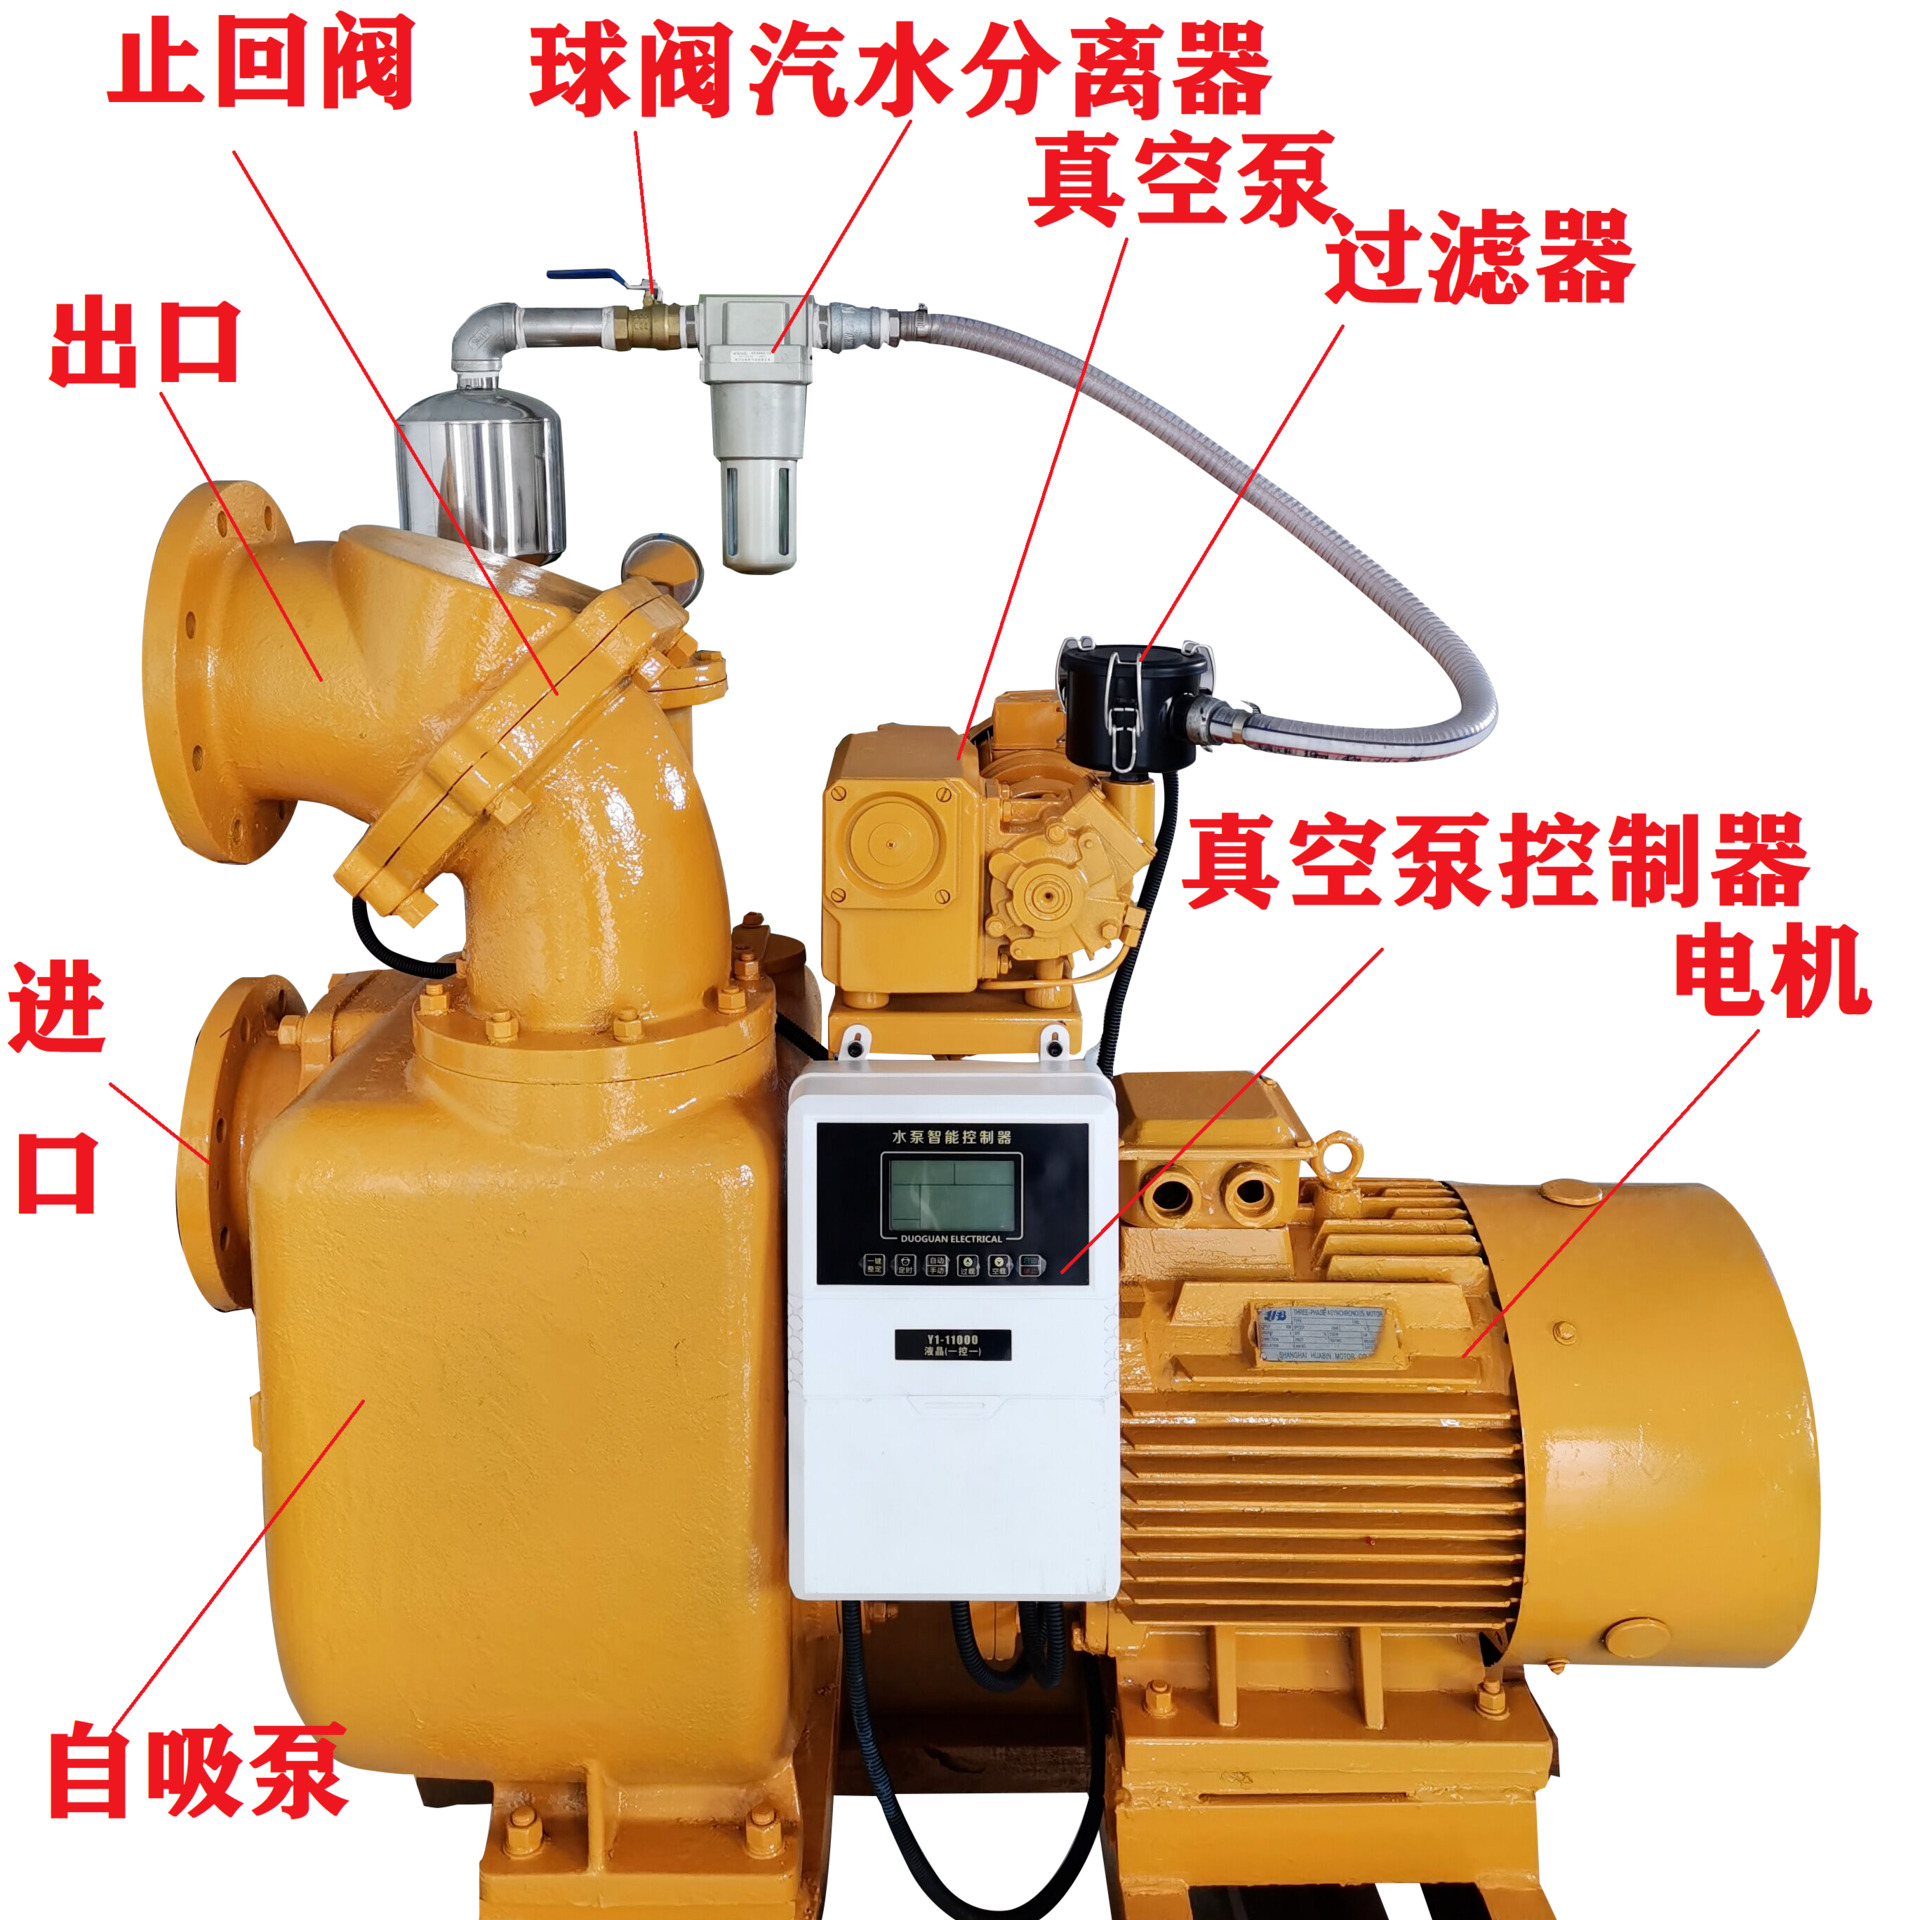 大吸力自吸泵 可空转的自吸泵 防堵塞自吸泵 大吸力防堵塞自吸泵图片